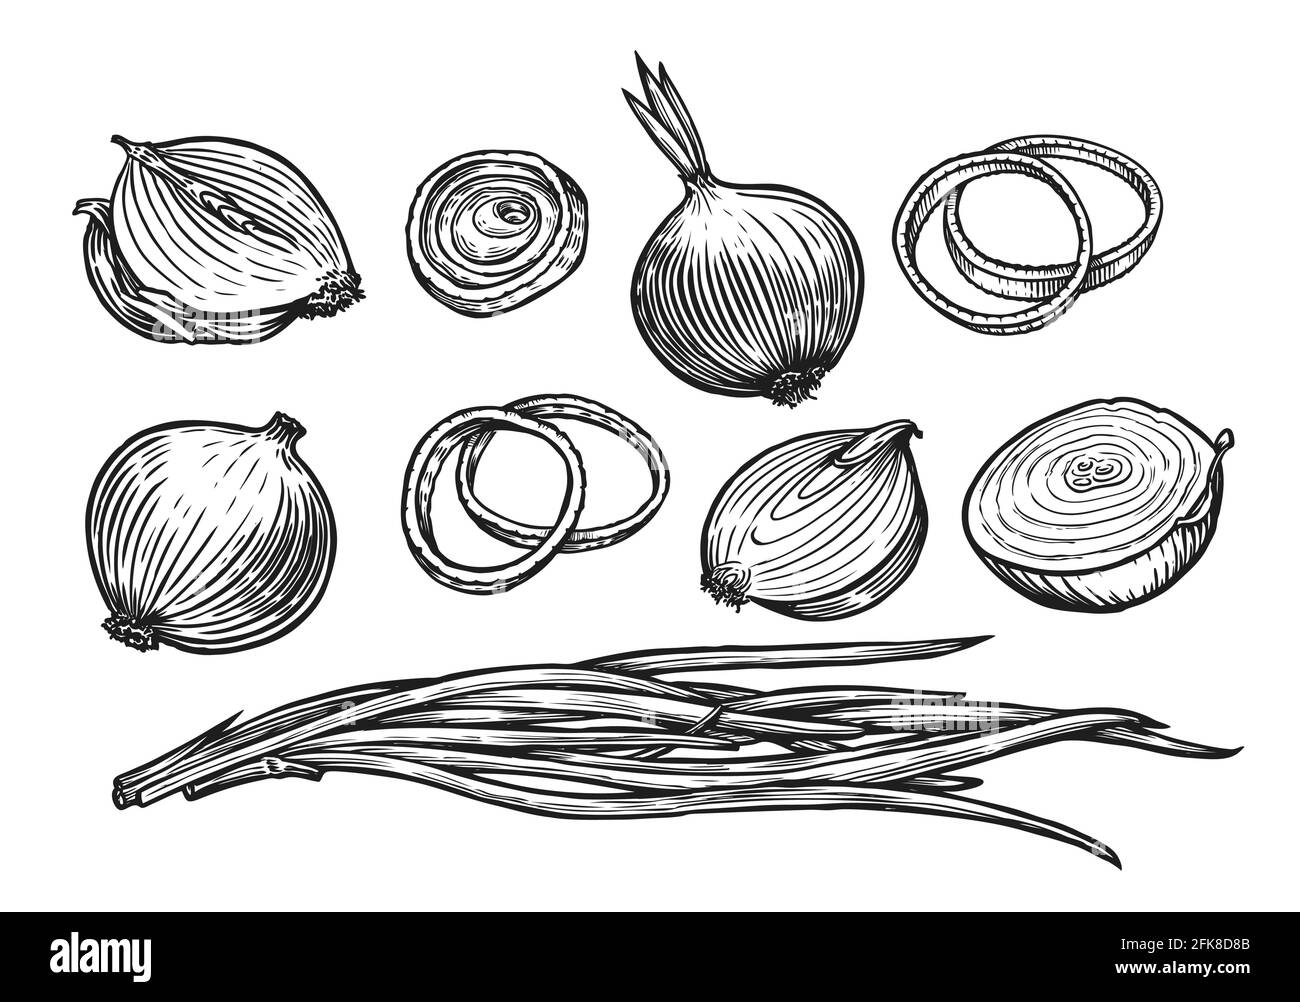 Zwiebelbirne und Ringe. Skizzenvektor für frisches Gemüse Stock Vektor